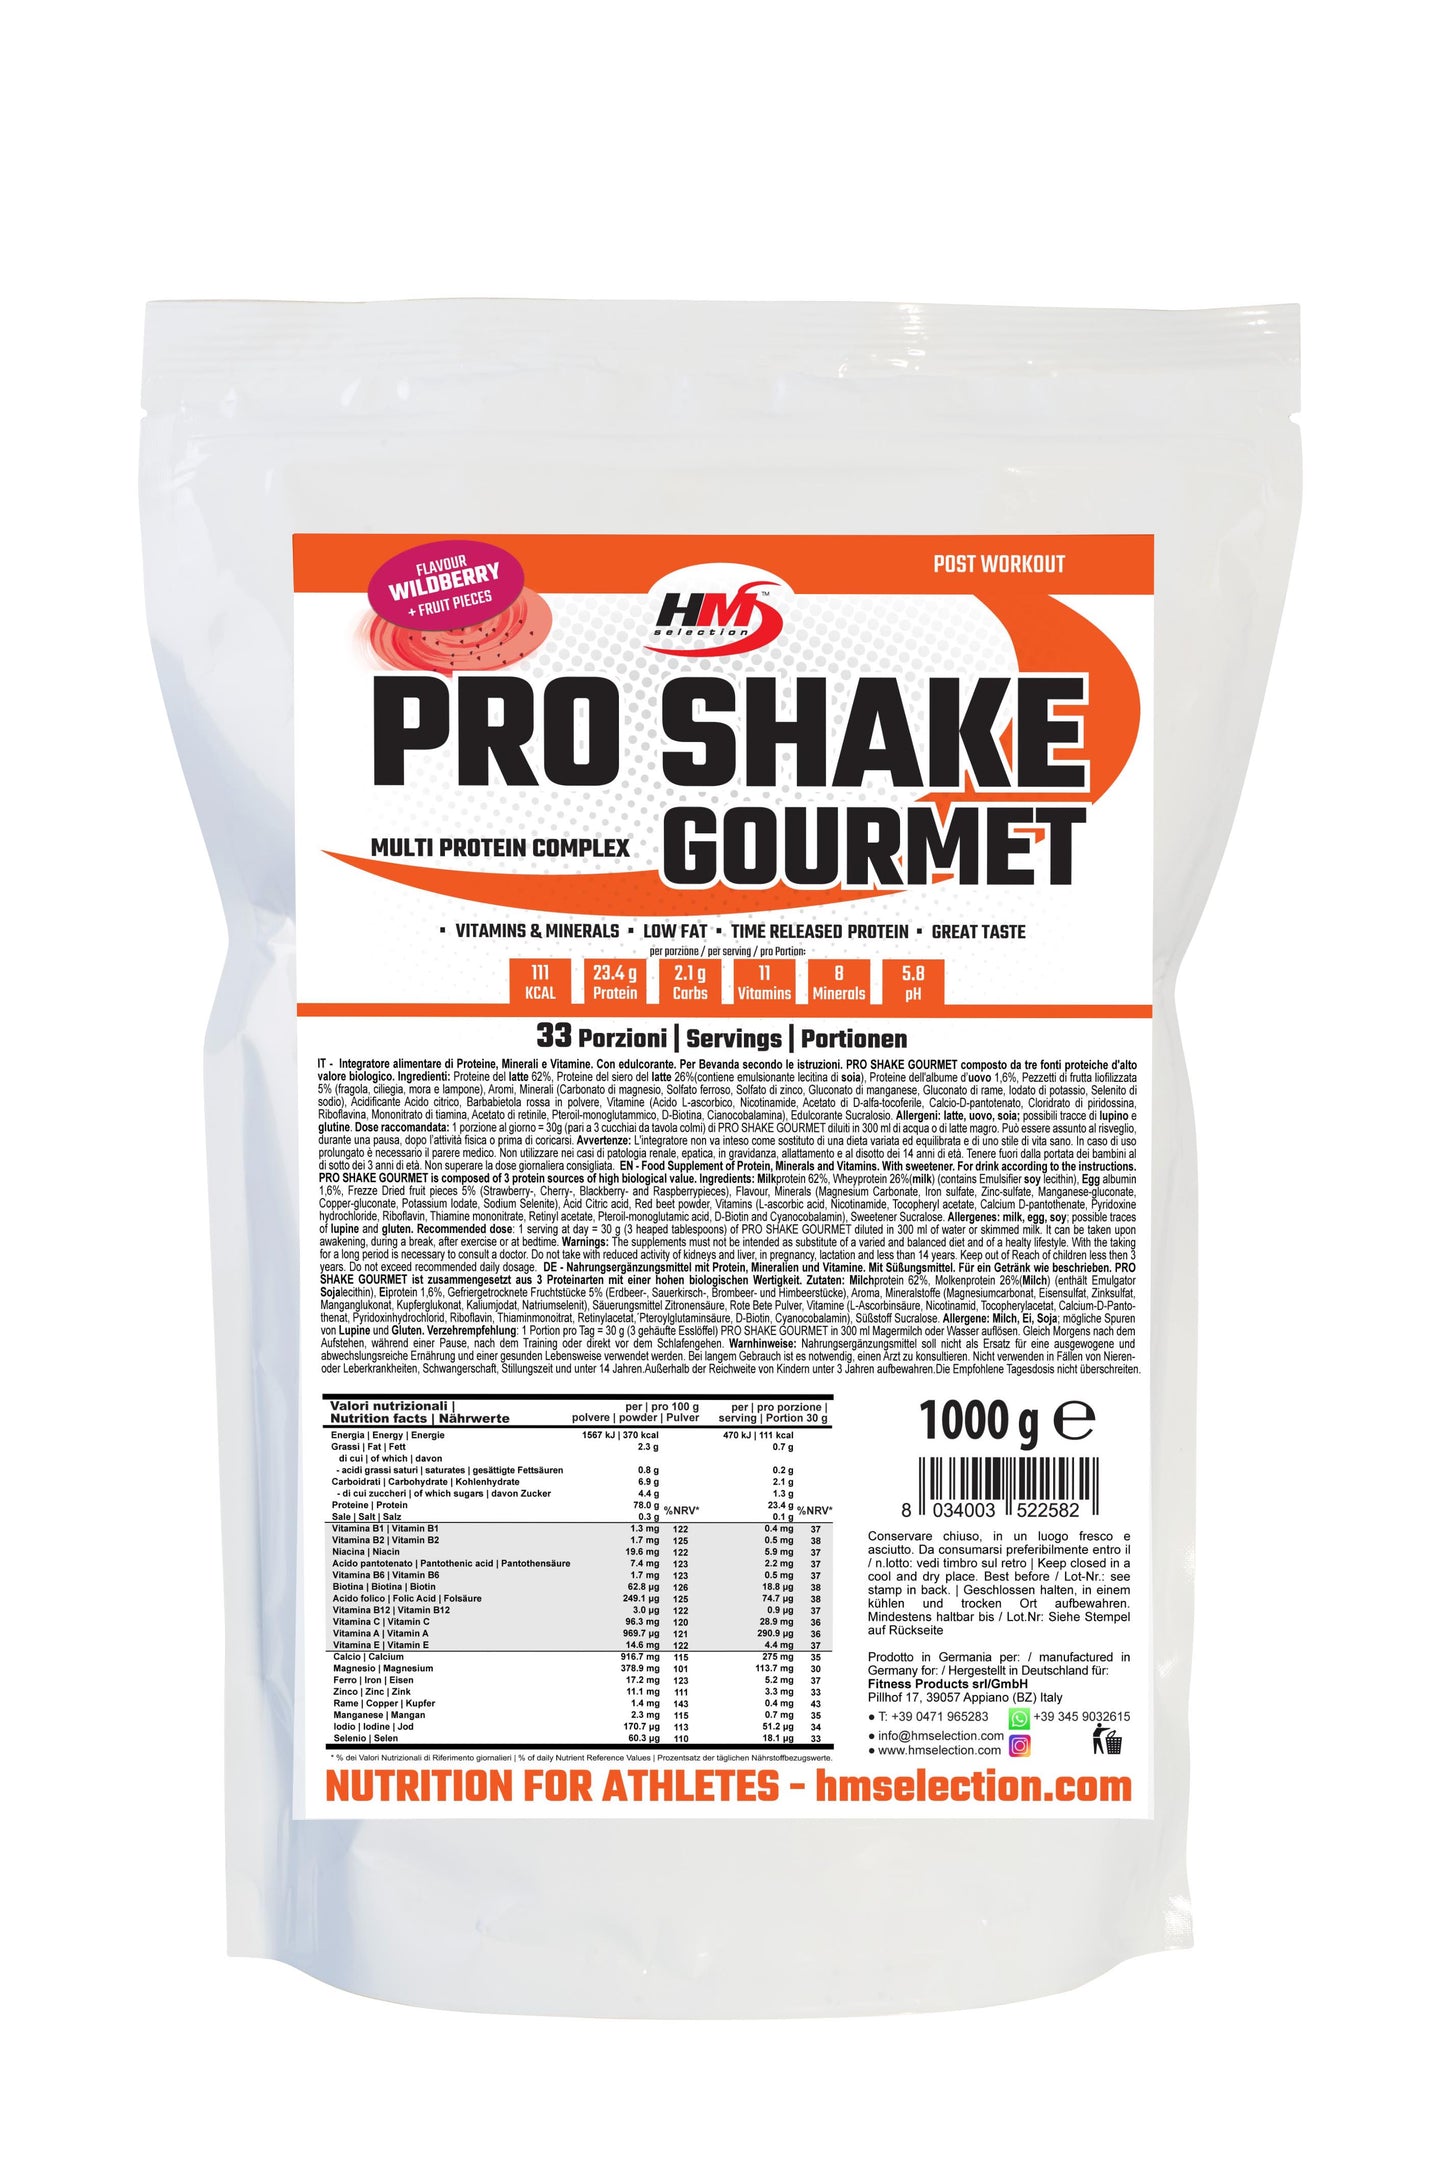 PRO SHAKE GOURMET, 1000g - multi protein complex, puro piacere con più proteine